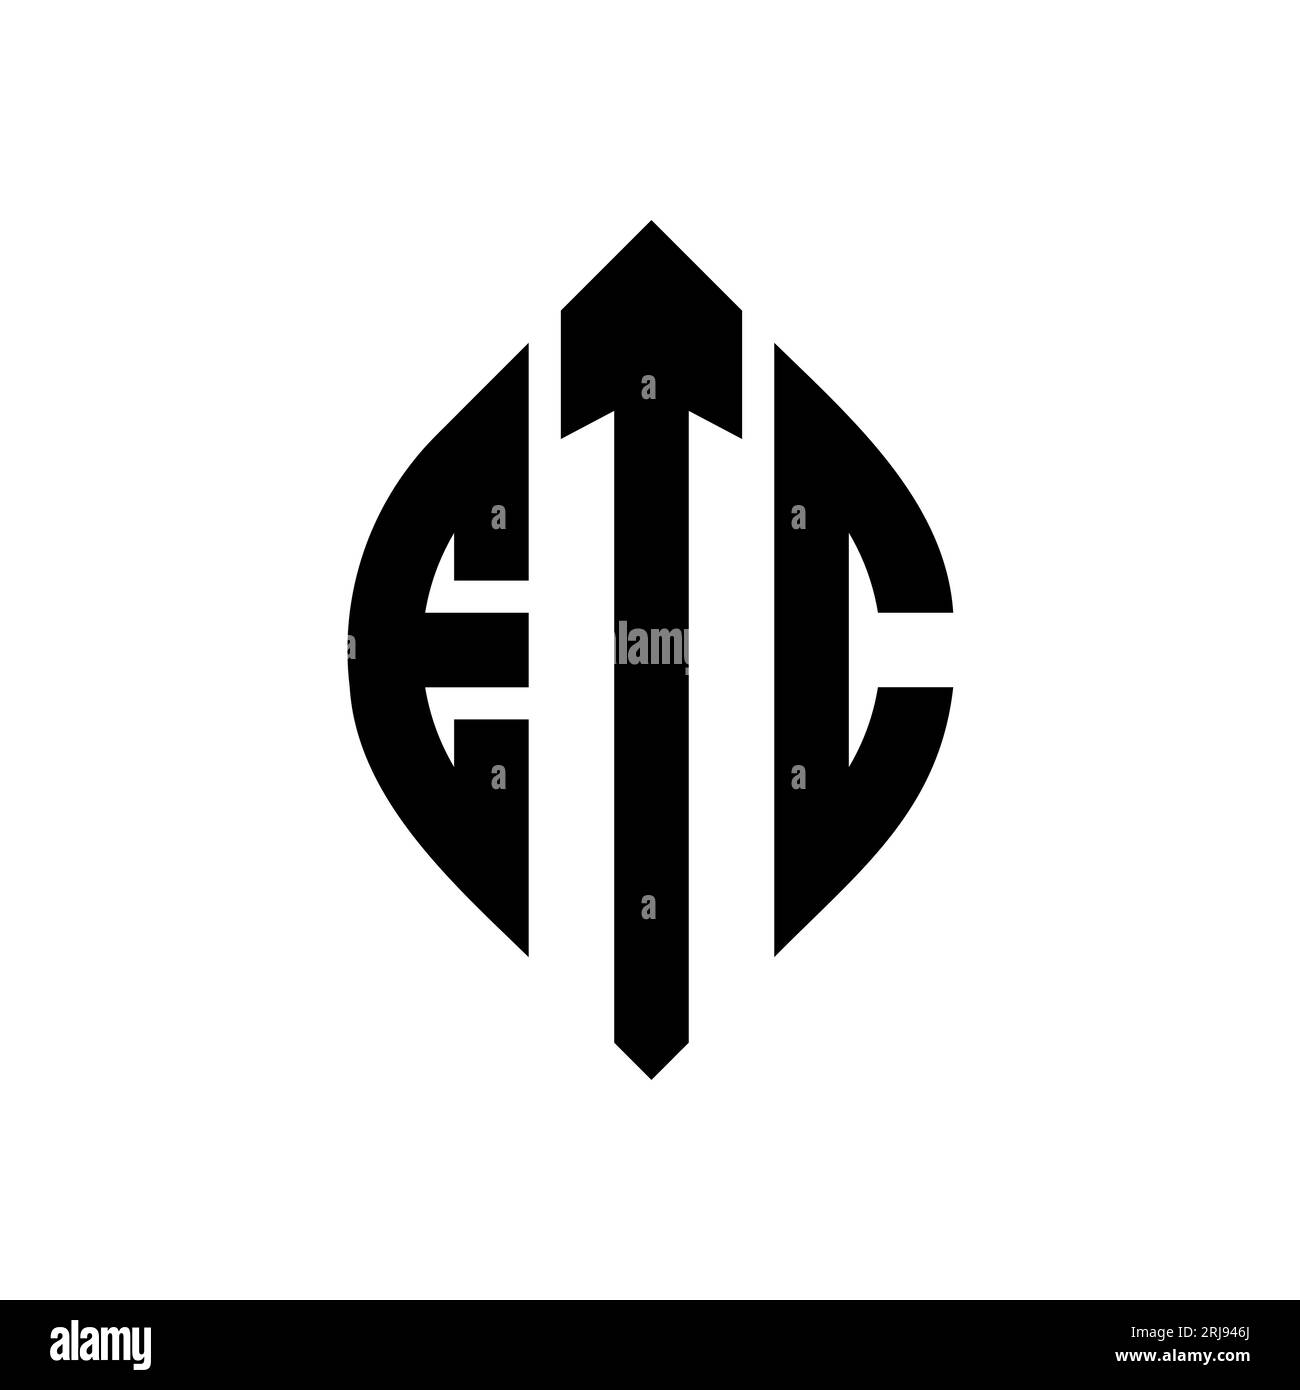 ETC kreisförmiges Logo mit Kreis- und Ellipsenform. ETC Ellipsenbuchstaben im typografischen Stil. Die drei Initialen bilden ein kreisförmiges Logo. ETC-CI Stock Vektor